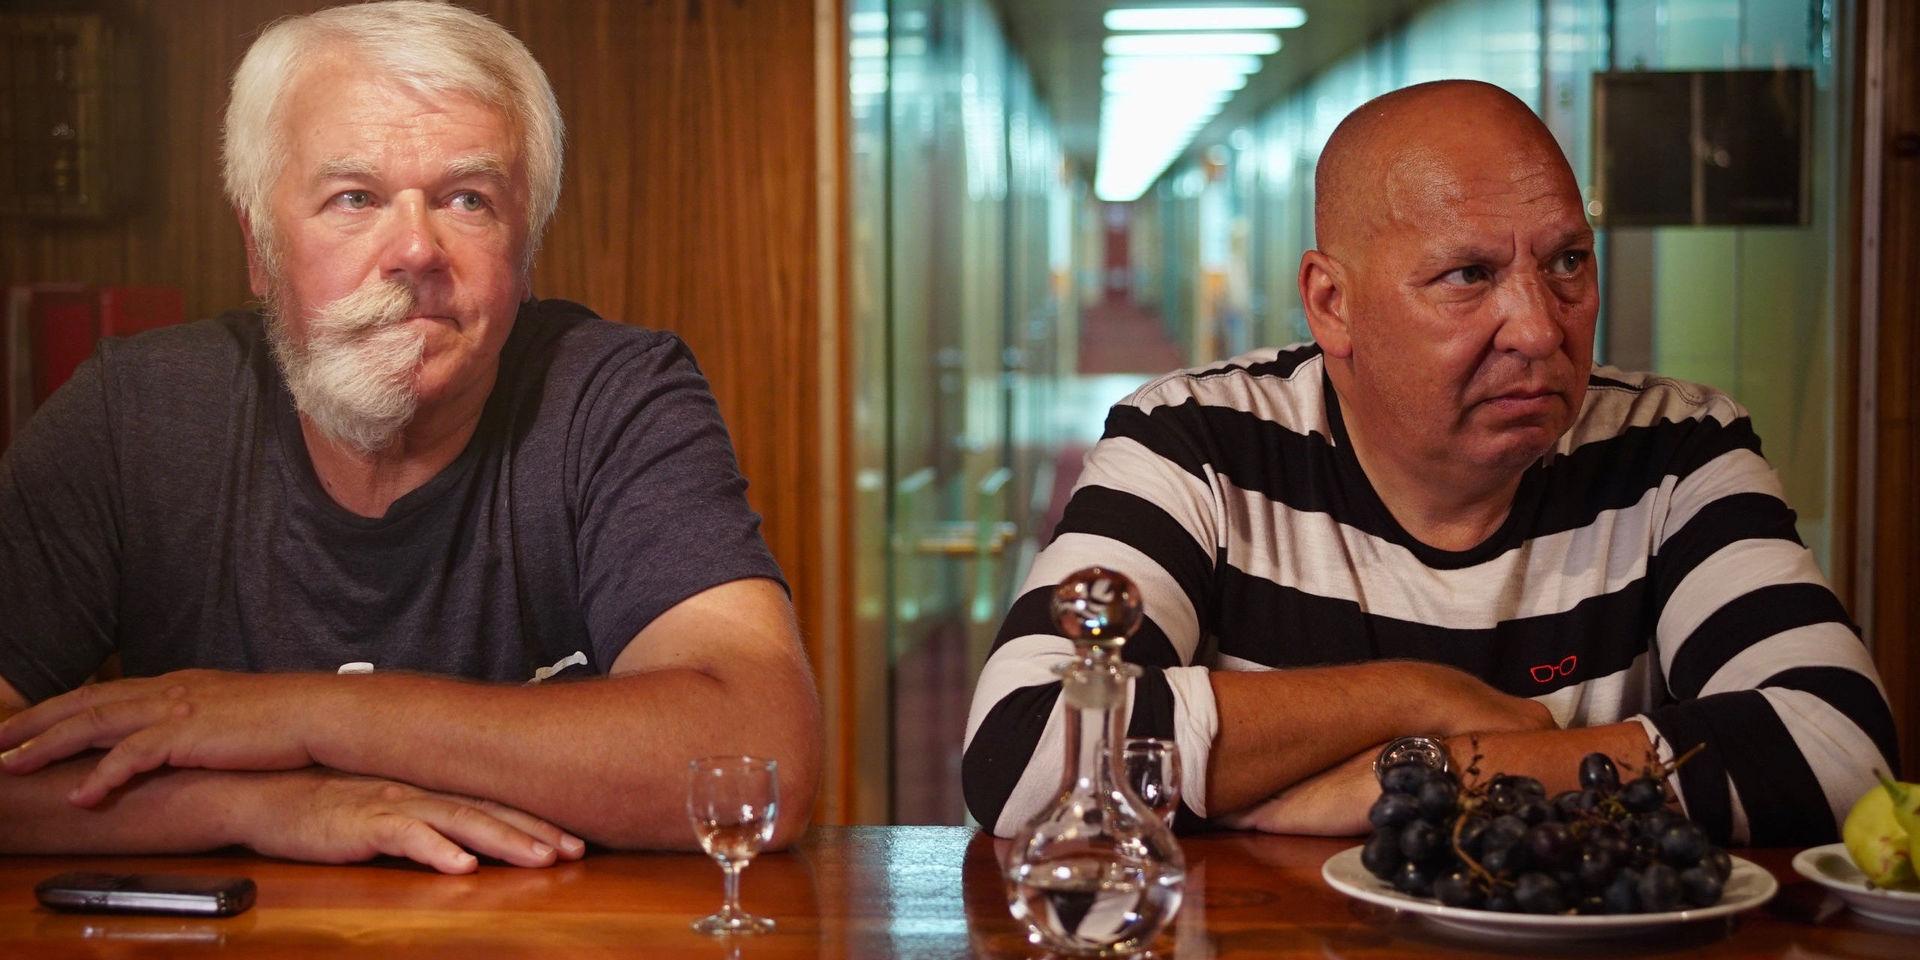 'Bitter love' av Jerzy Sladkowski är en av dokumentärfilmerna som tävlar om huvudpriset på festivalen Cph Dox. Pressbild.